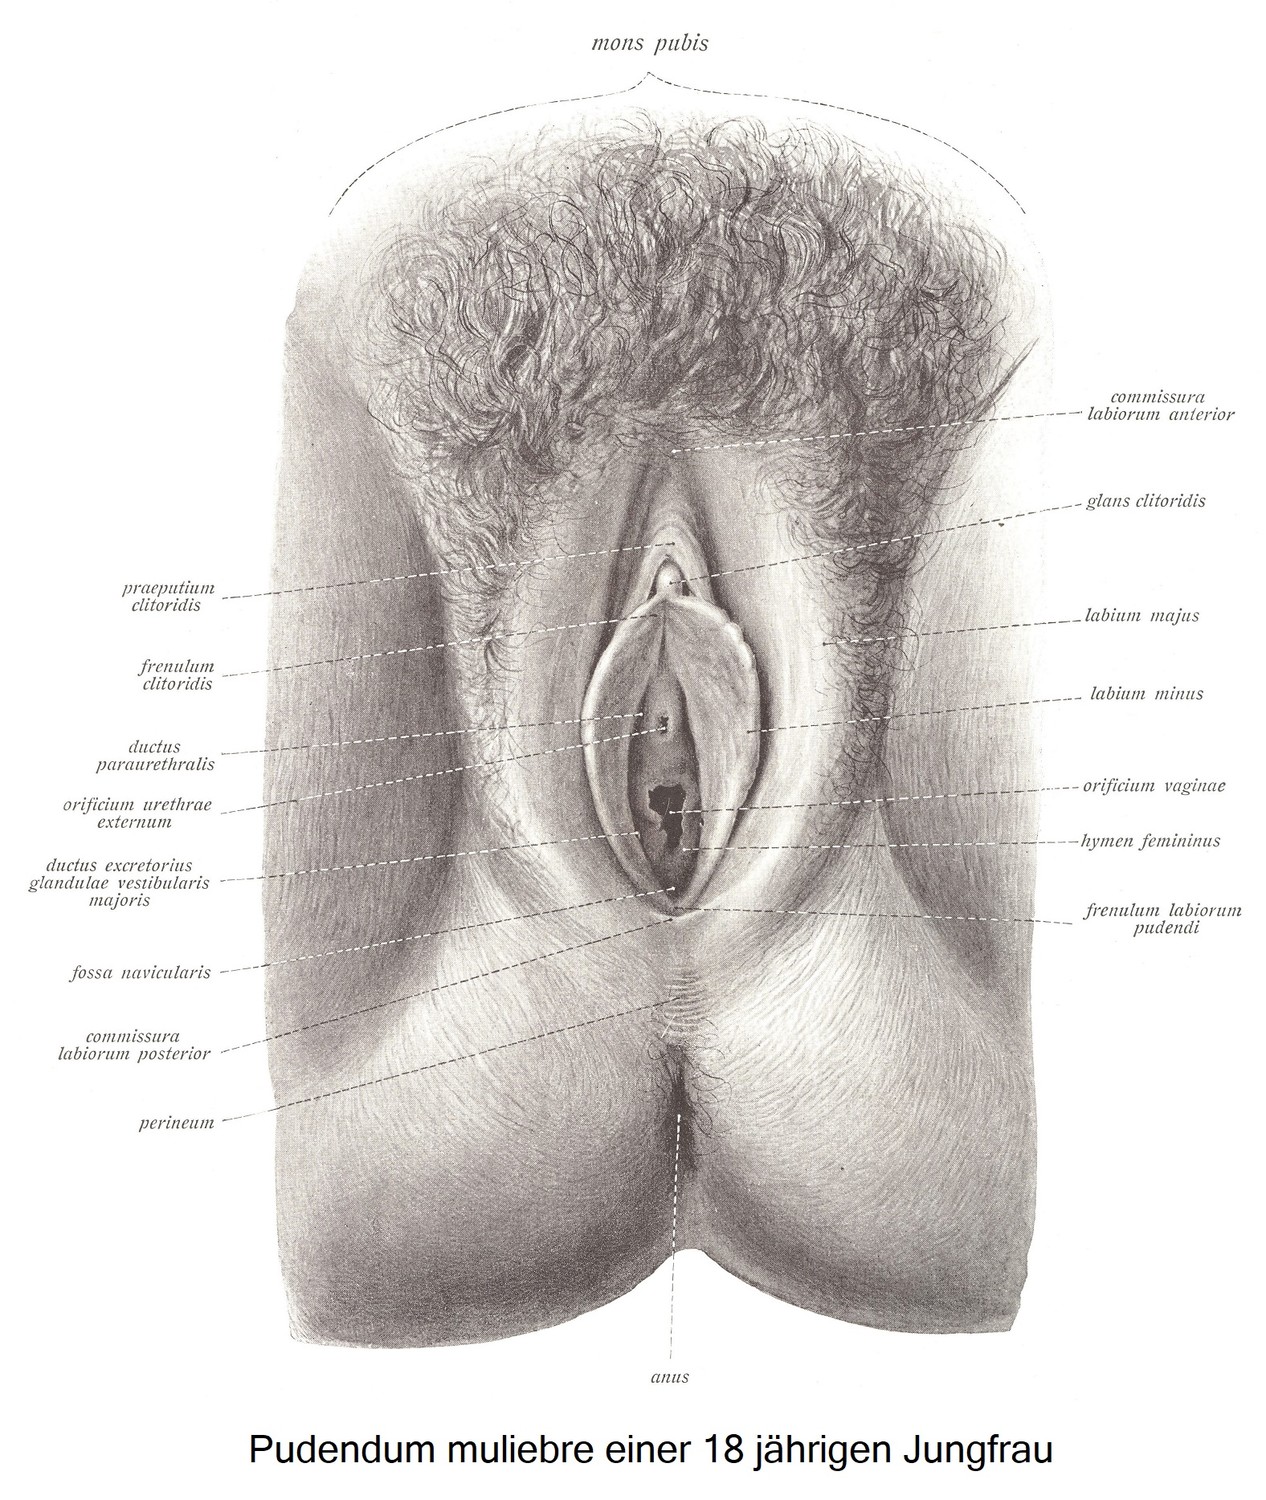 Die weibliche Scham, pudendum muliebre (vulva)